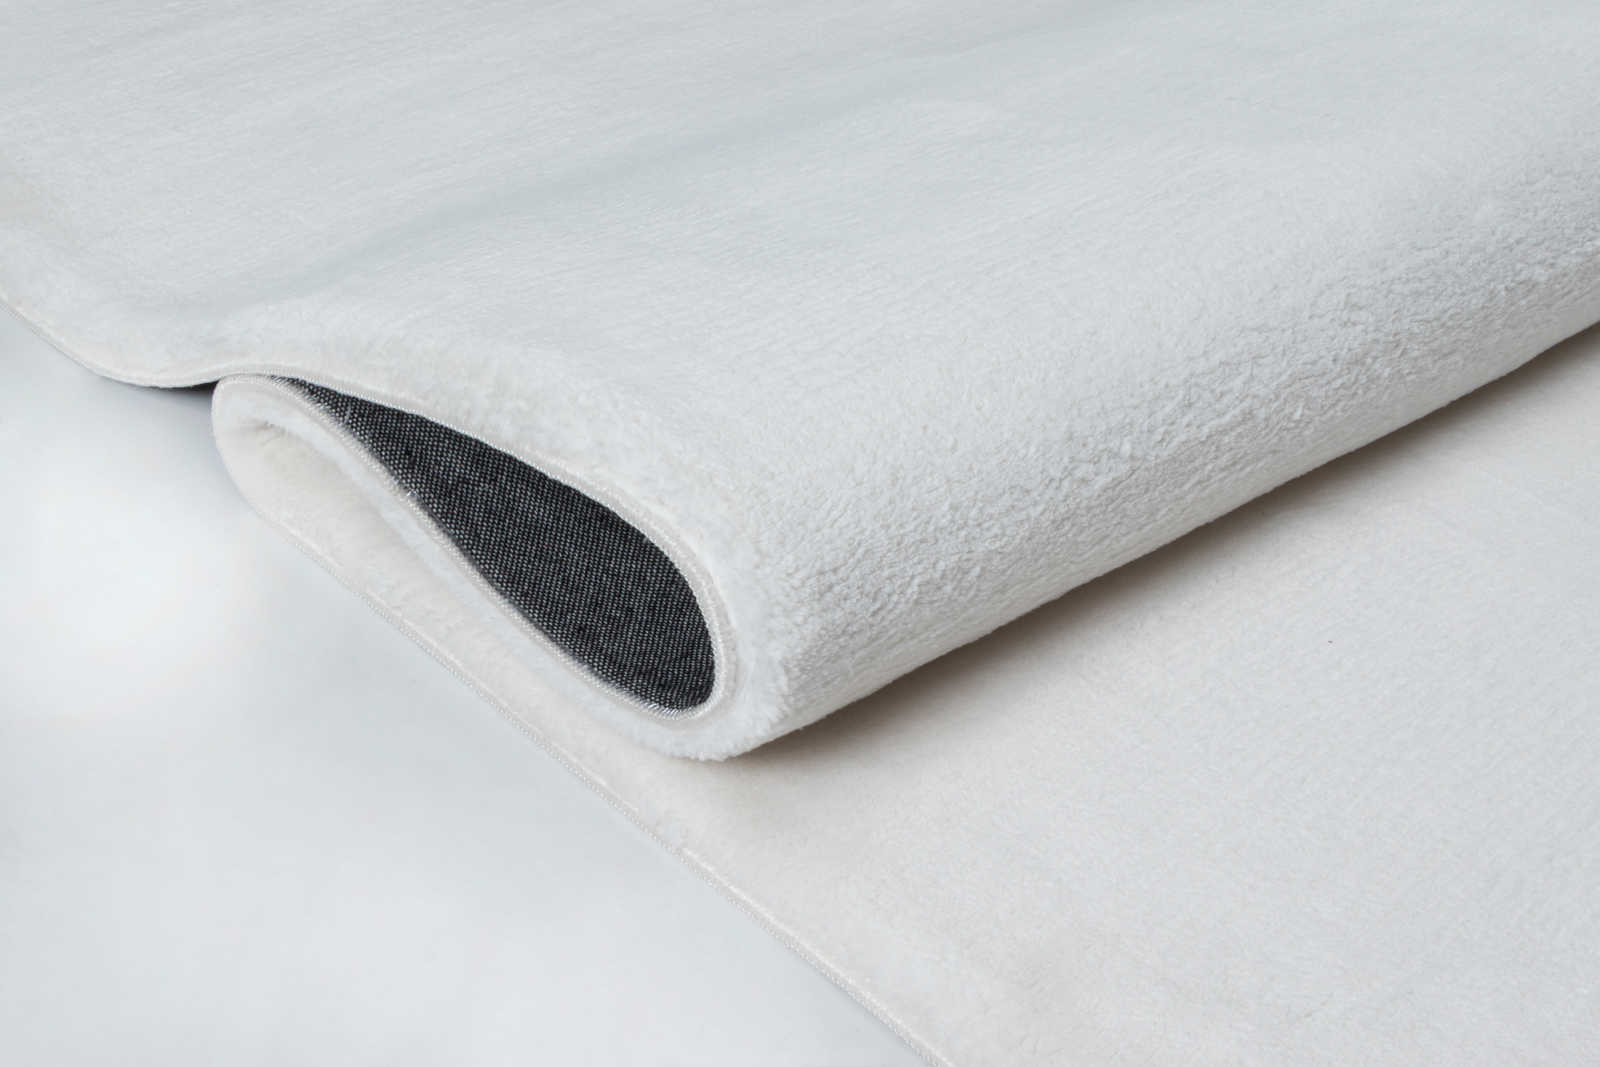             Vaporoso tappeto a pelo alto in un piacevole color crema - 110 x 60 cm
        